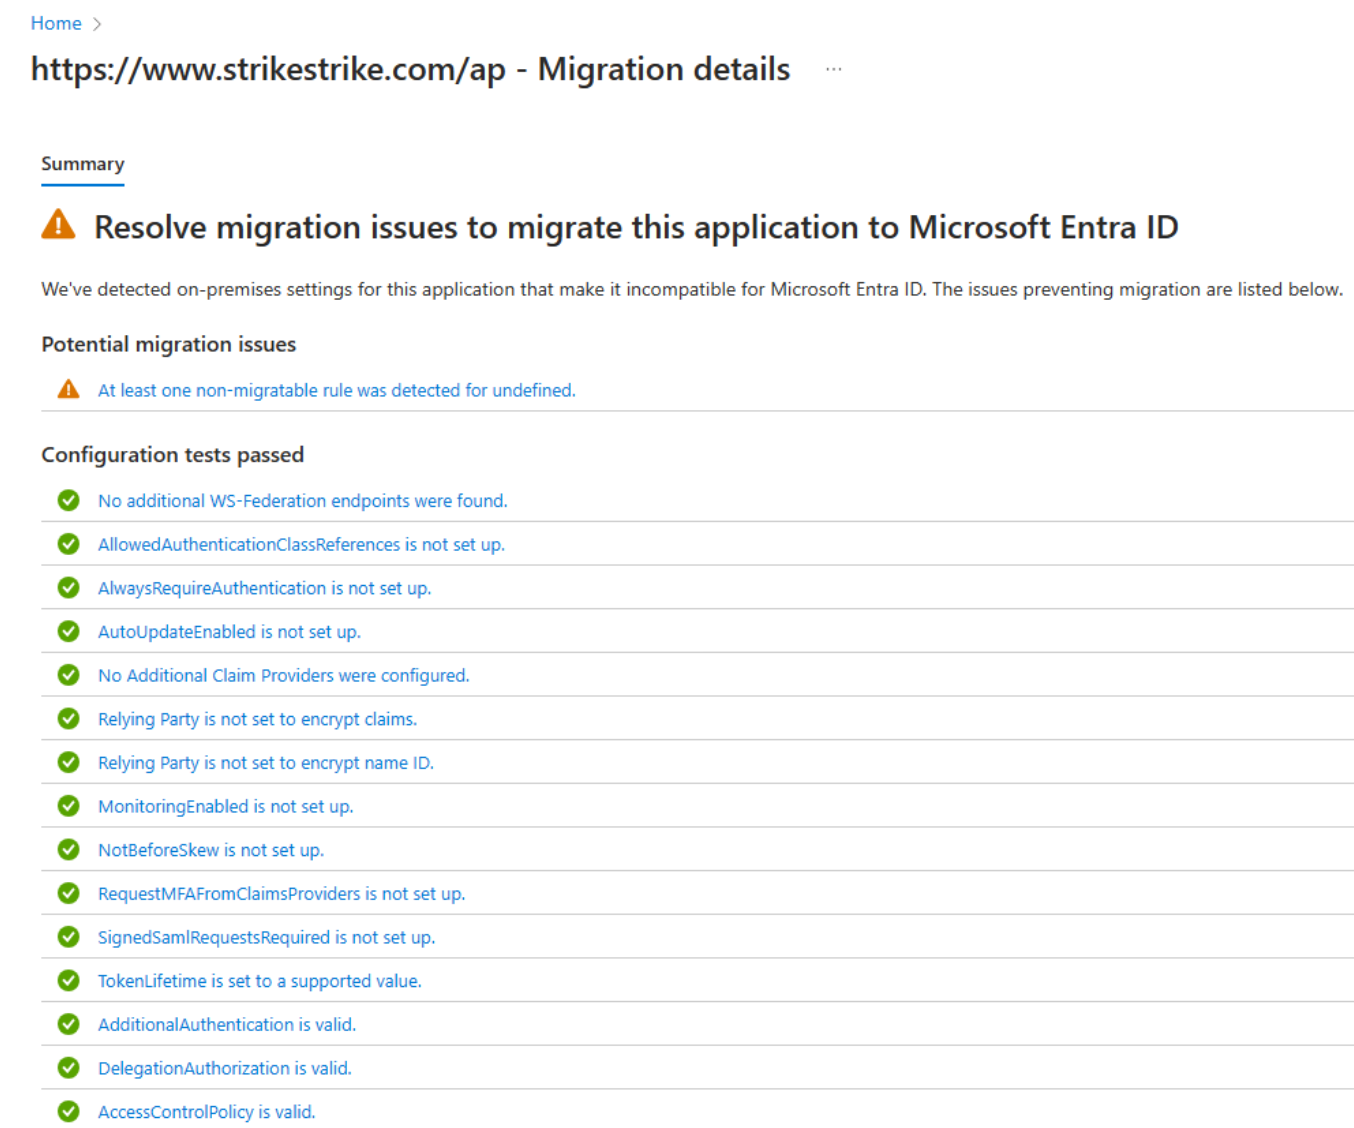 Captura de tela do painel de detalhes da migração do aplicativo AD FS.